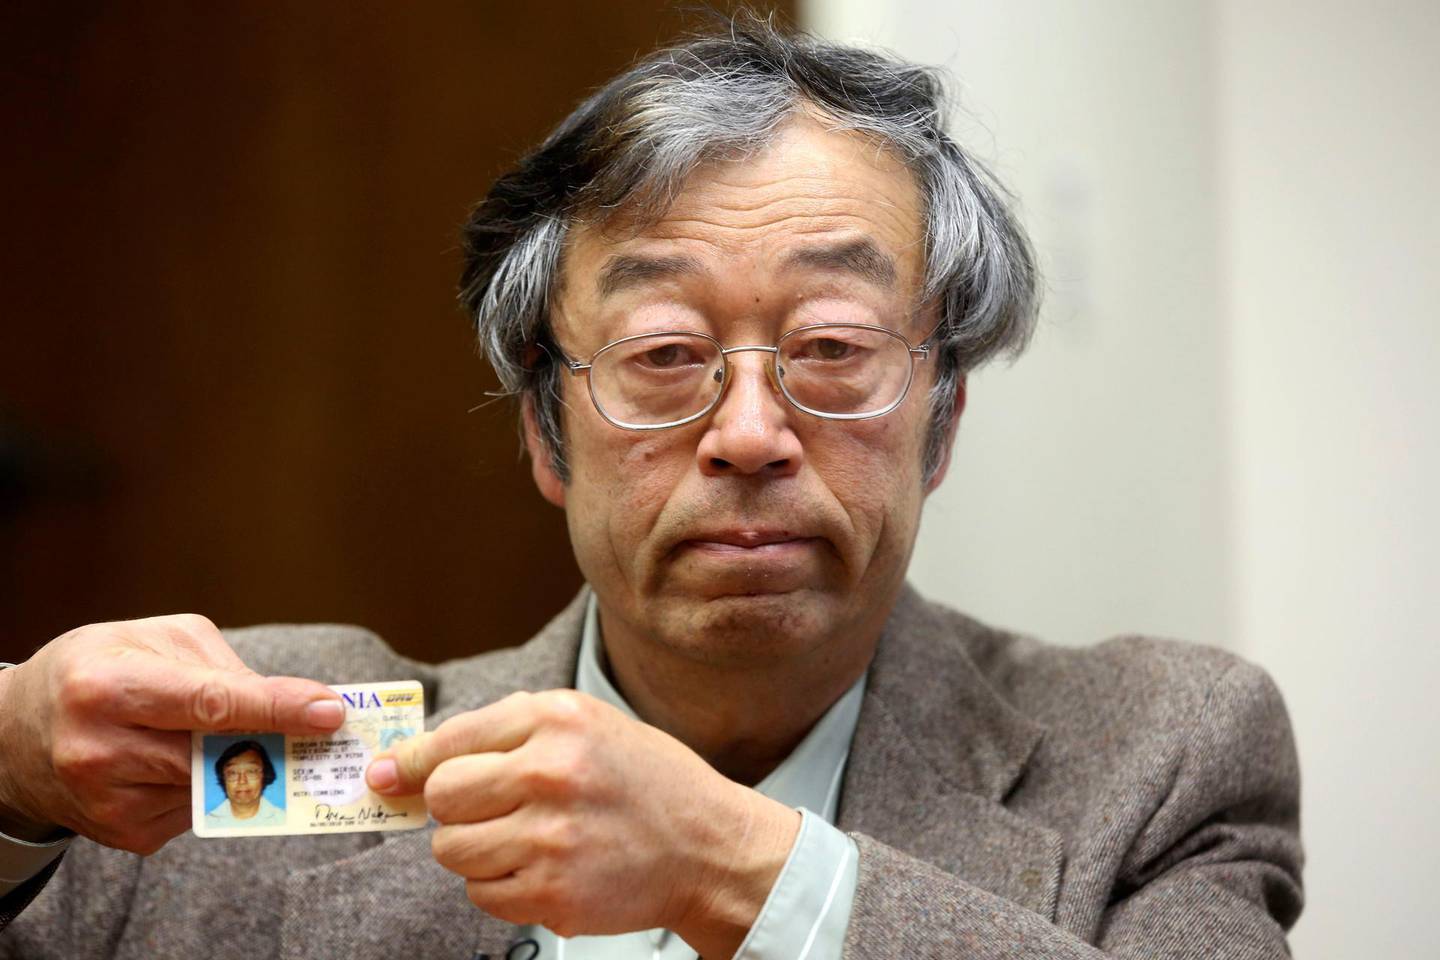 El hombre de la fotografía es Dorian Nakamoto, un físico estadounidense que fue confundido con Satoshi Nakamoto. Este nombre de origen japonés es solo un seudónimo utilizado para referirse a las personas que desarrollaron el software para bitcoin. Nadie sabe con certeza si se trata de una sola persona, un grupo de individuos o una entidad. Pero posee la mayor cantidad de bitcoines en todo el mundo. Las estimaciones calculan que tiene cerca de 1,1 millones de monedas. Cerca de 25.000 millones de dólares.